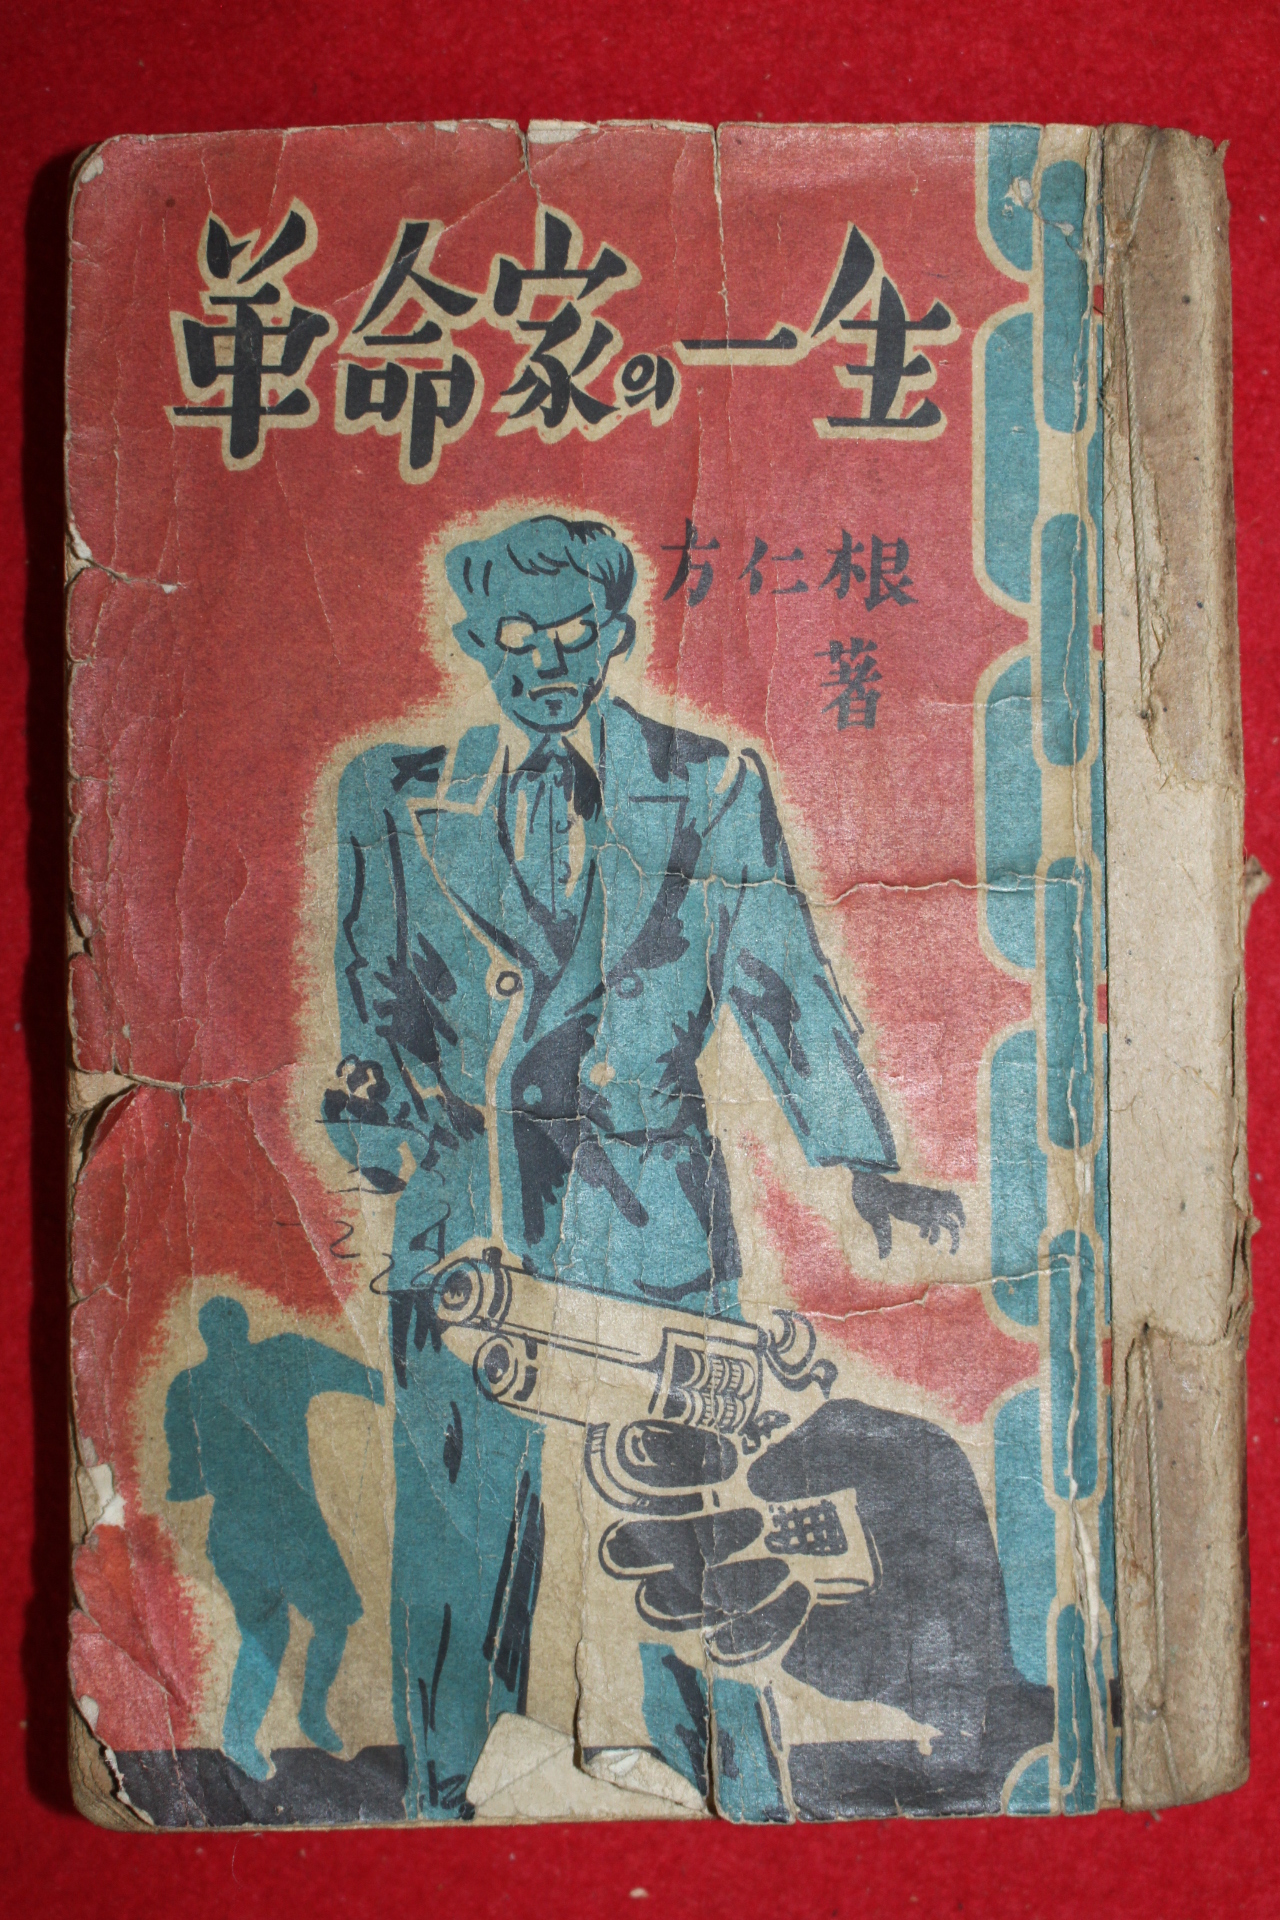 1957년(단기4290년) 방인근(方仁根) 혁명가의 일생